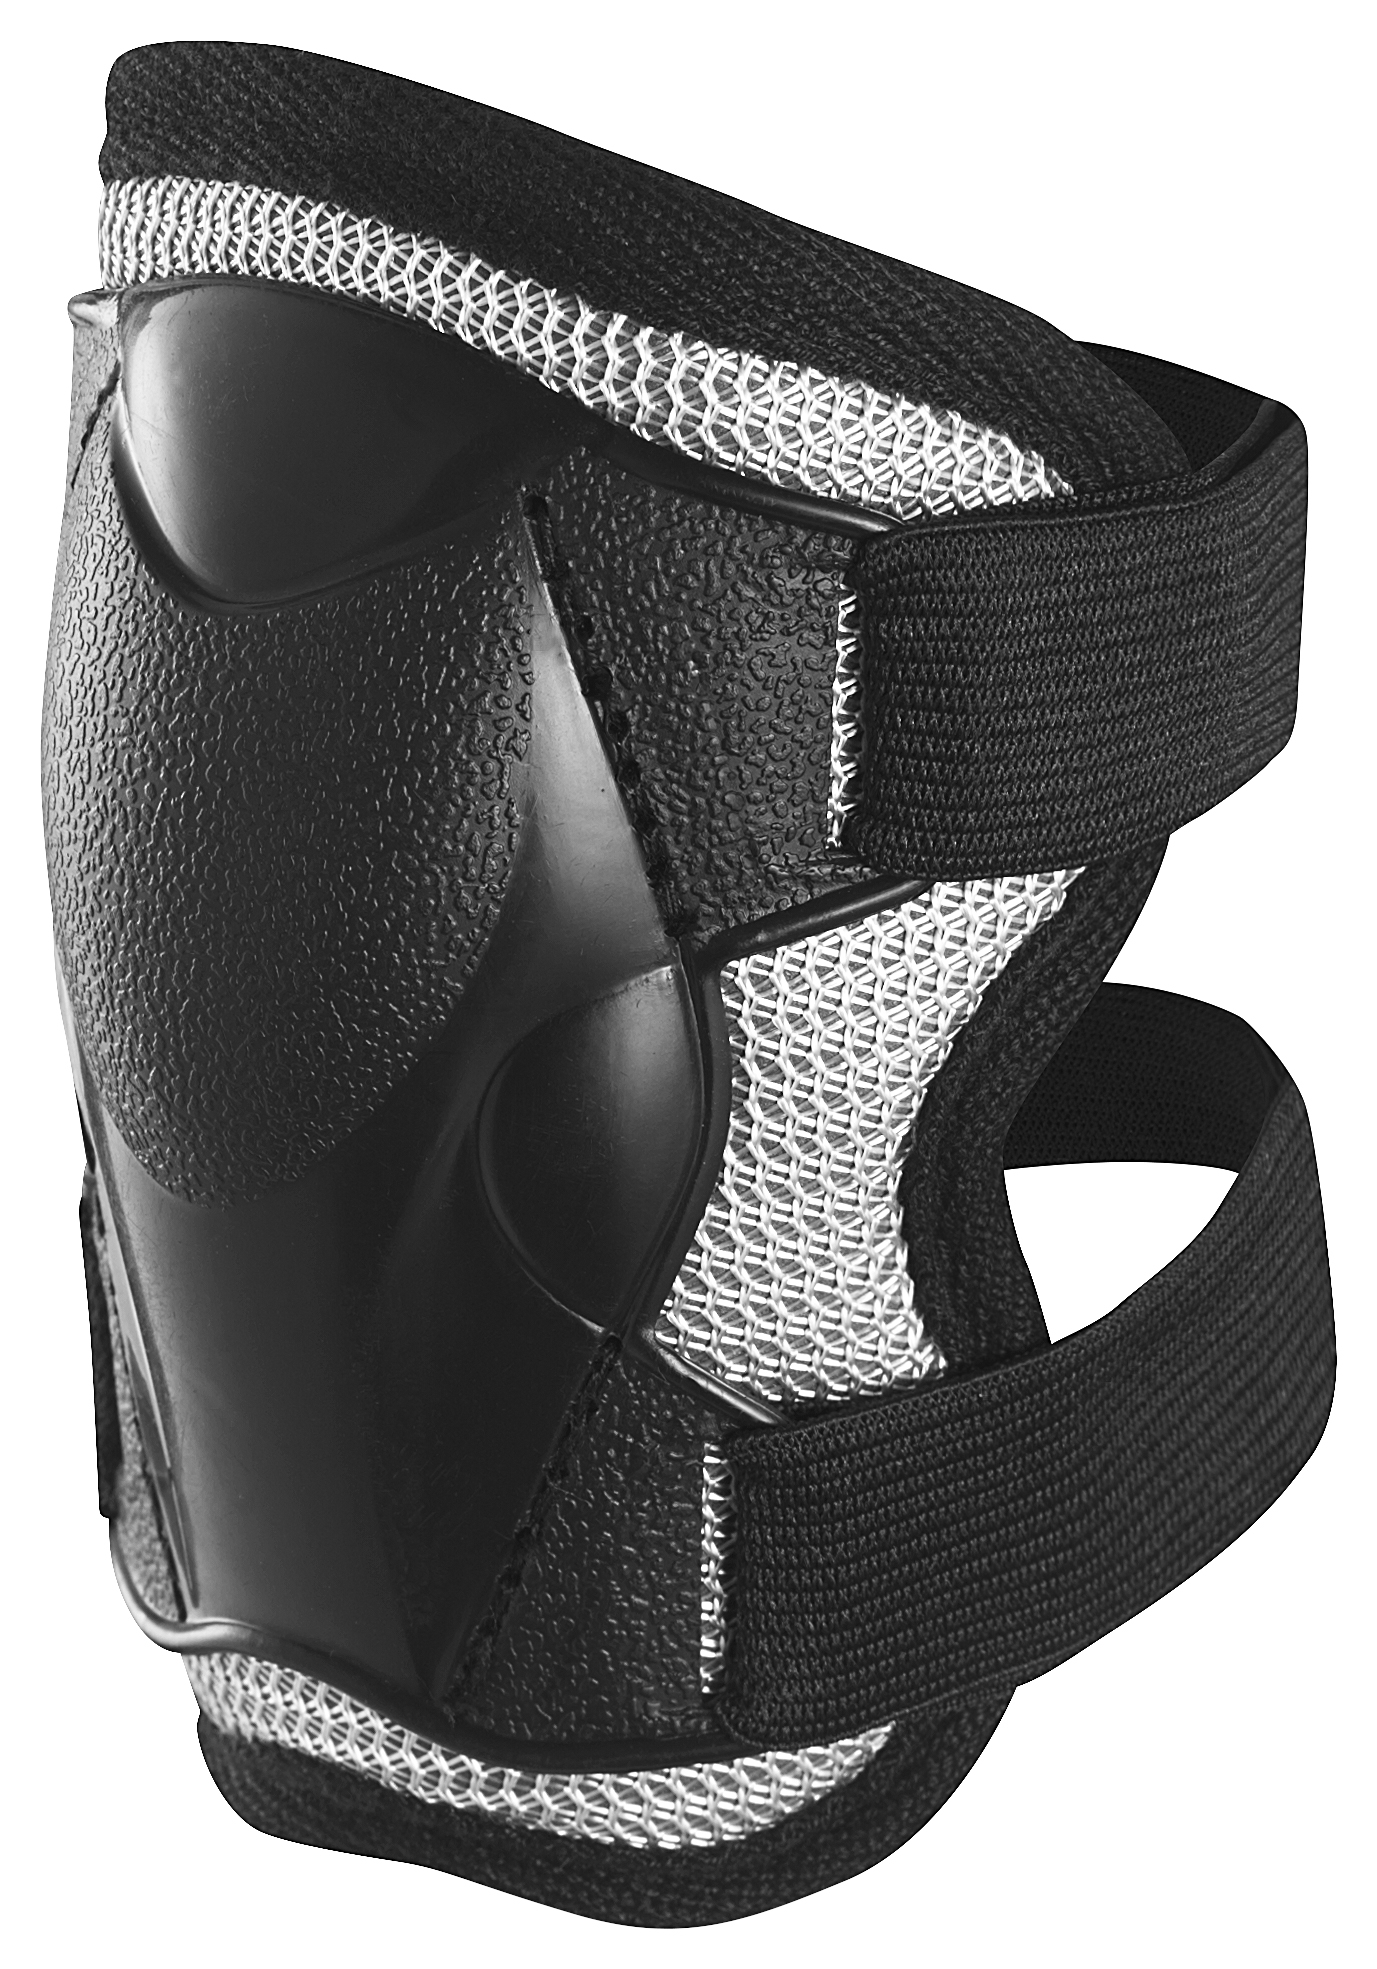 Защитный комплект Stiga Comfort JR, размер L, черный (82-2741-06) - фото 2